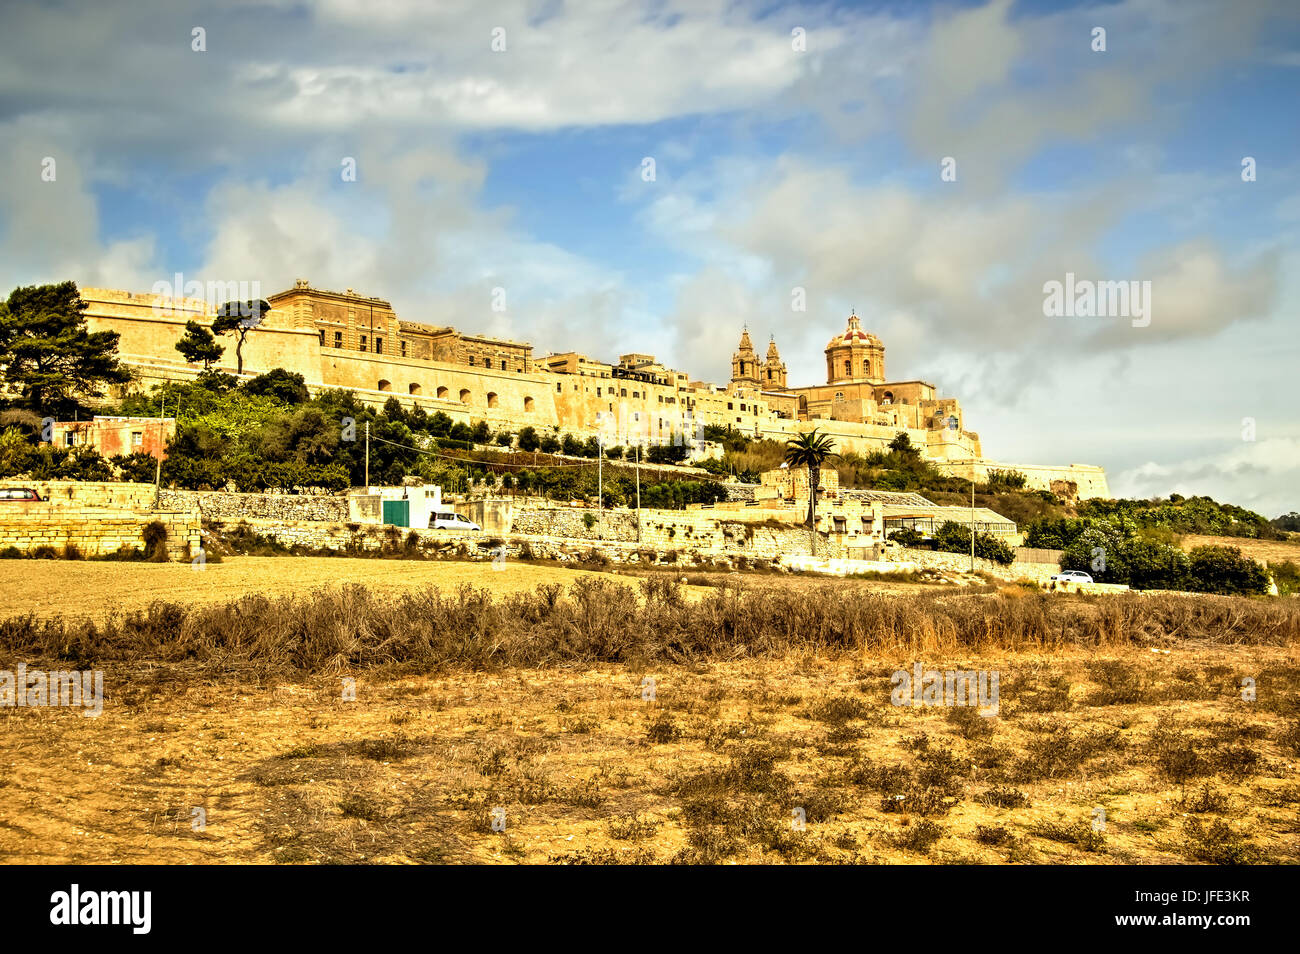 Mdina, fortificata città silenziosa di Malta, anticamente era la capitale di Malta. Foto Stock